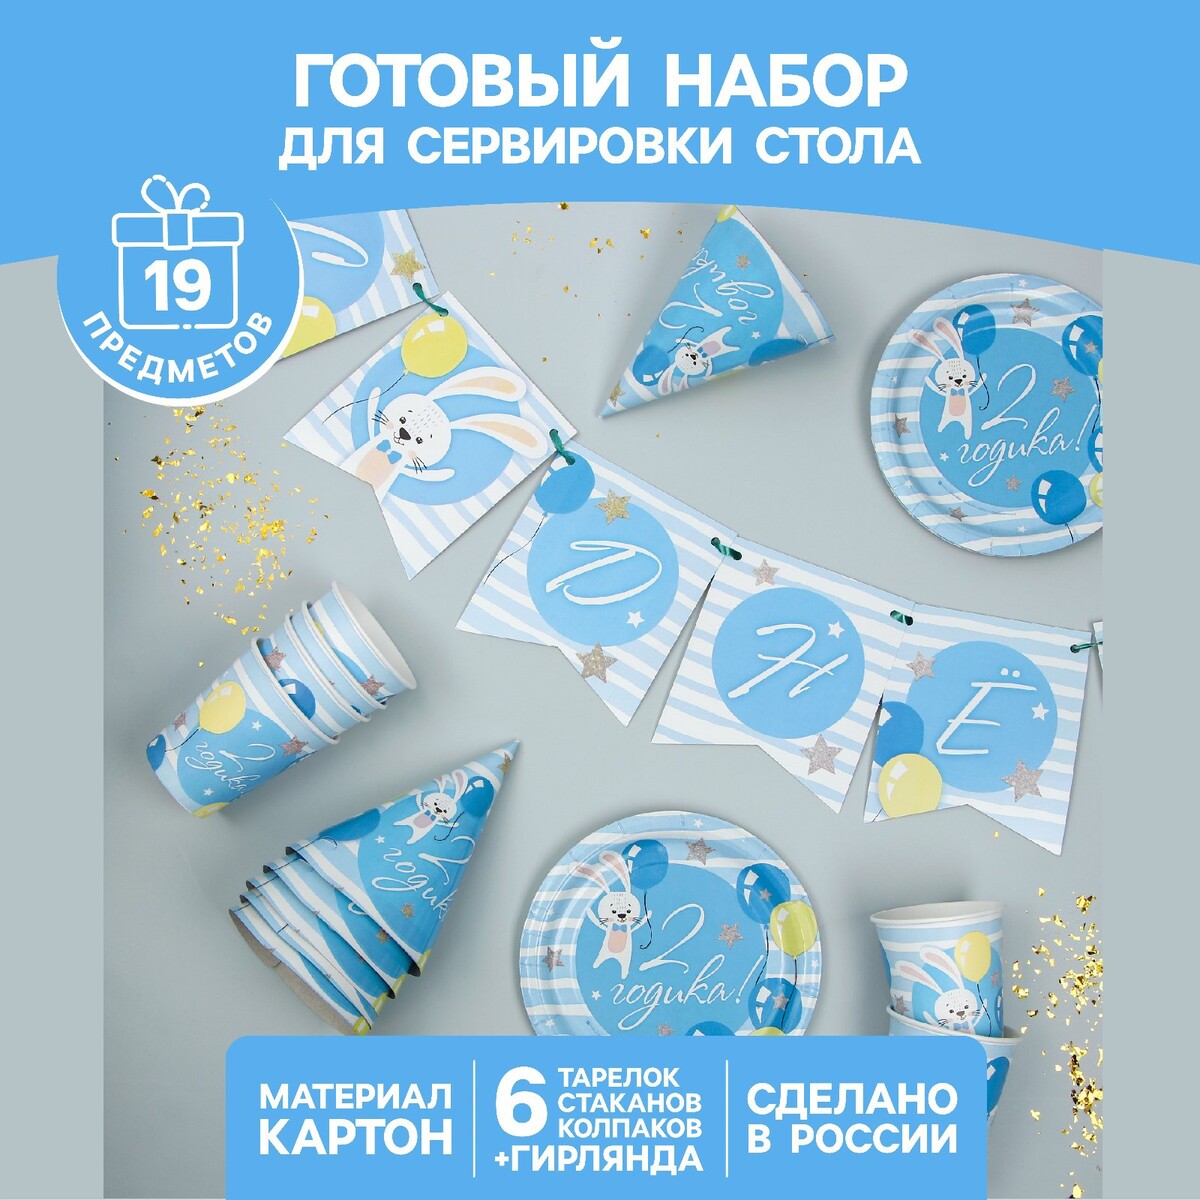 Набор бумажной посуды одноразовый с днем рождения. 2 годика», 6 тарелок, 6 стаканов, 6 колпаков, 1 гирлянда, цвет голубой